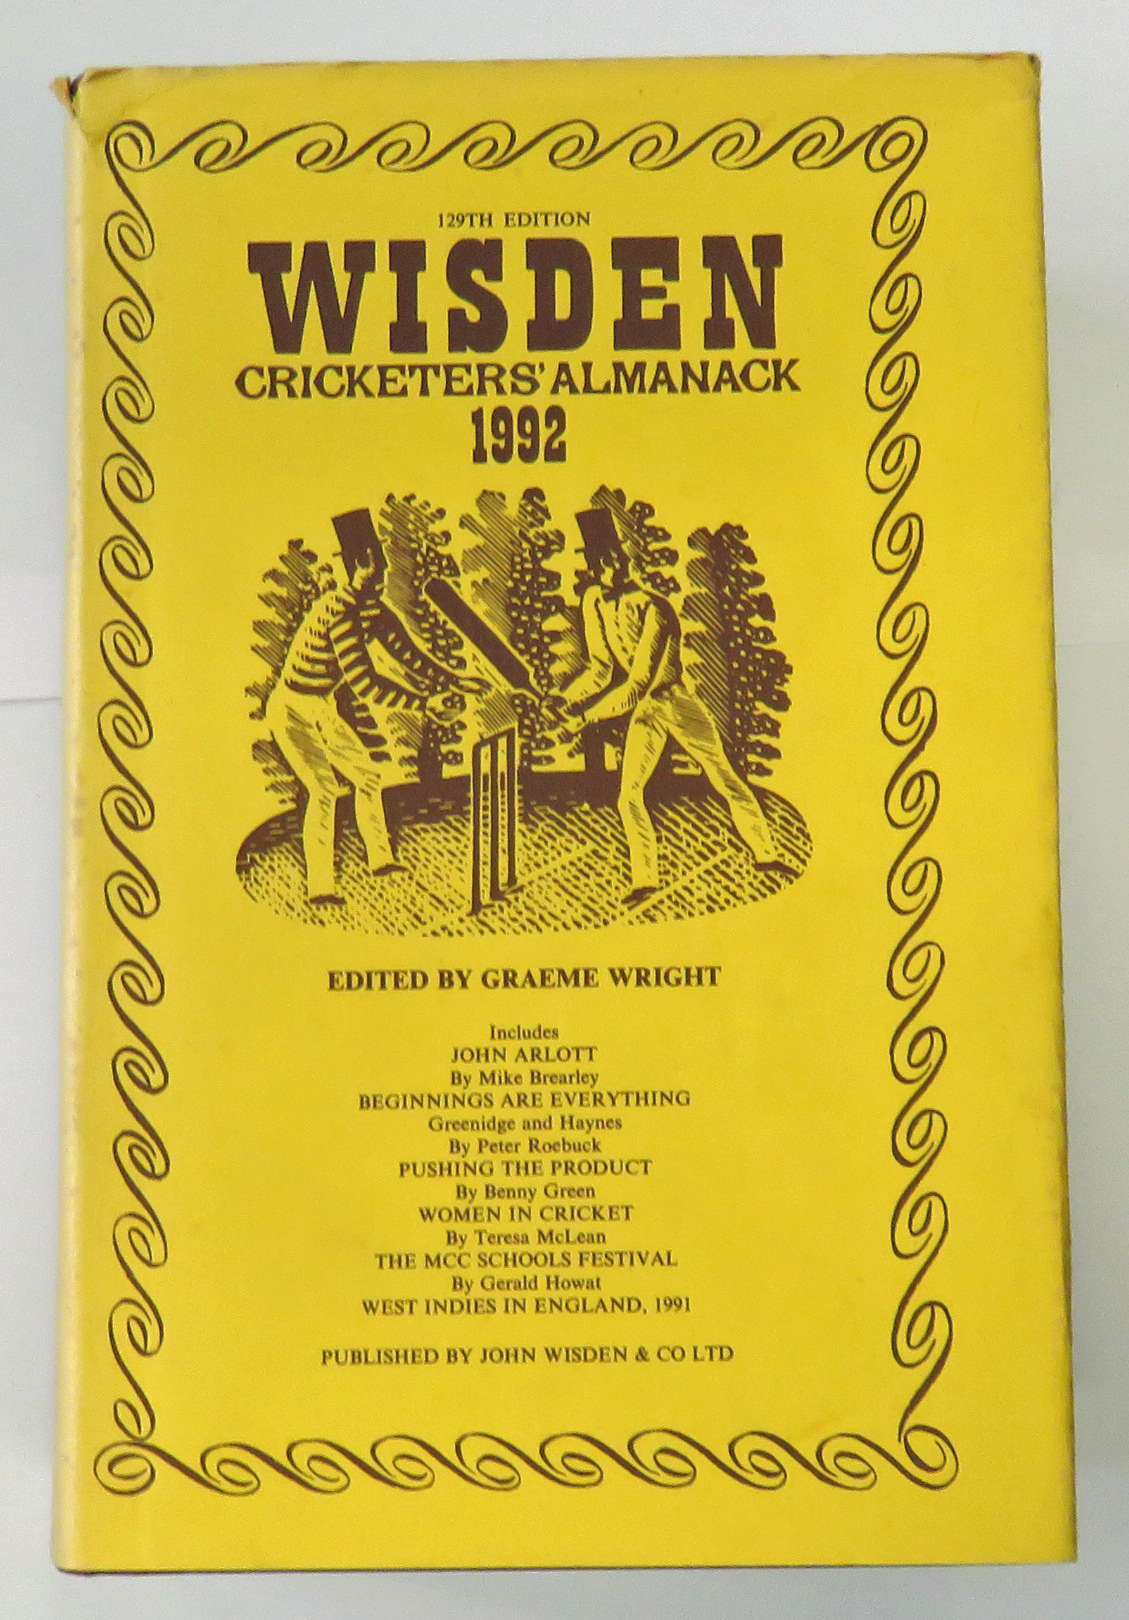 Wisden Cricketers' Almanack 1992